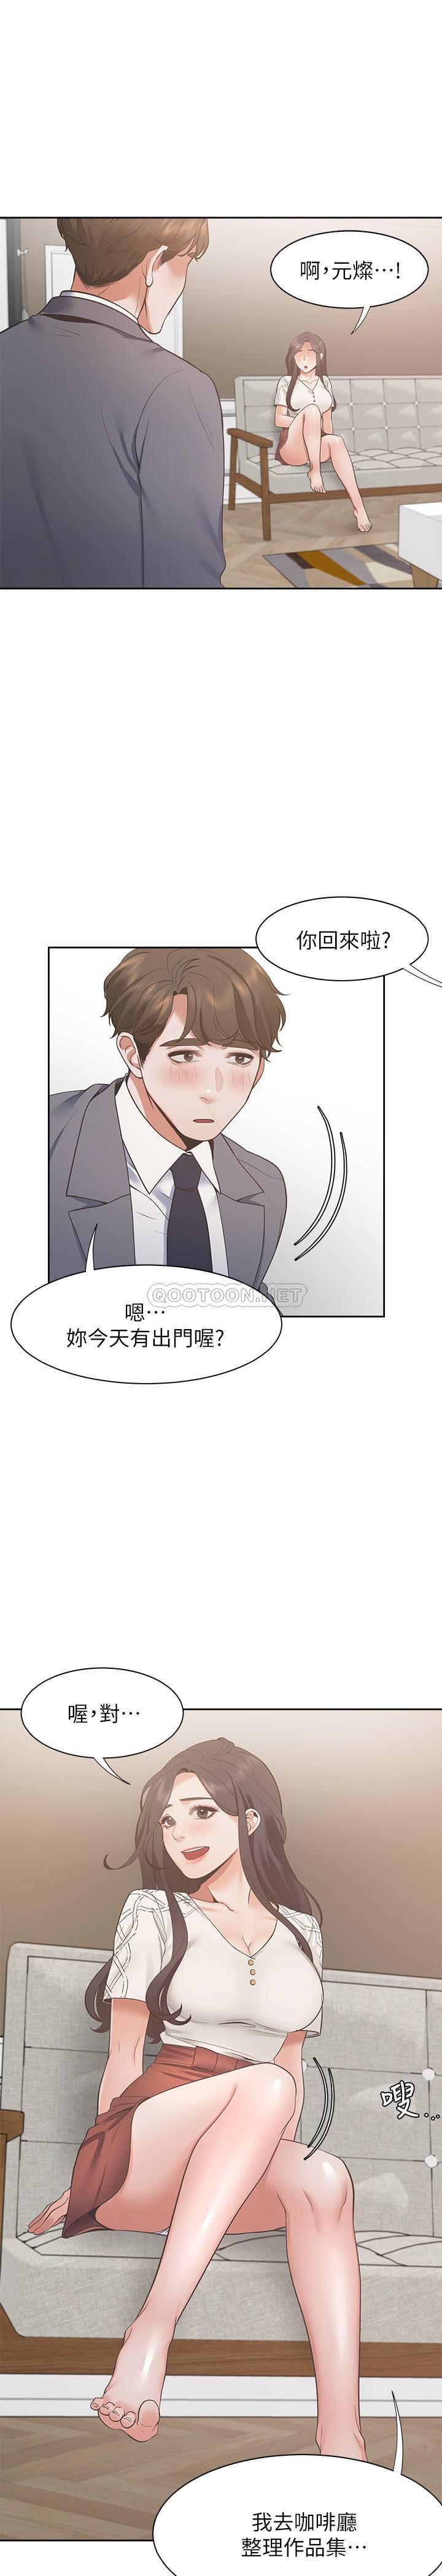 韩国污漫画 愛火難耐 第22话-你们是在打ye?战吗?! 28